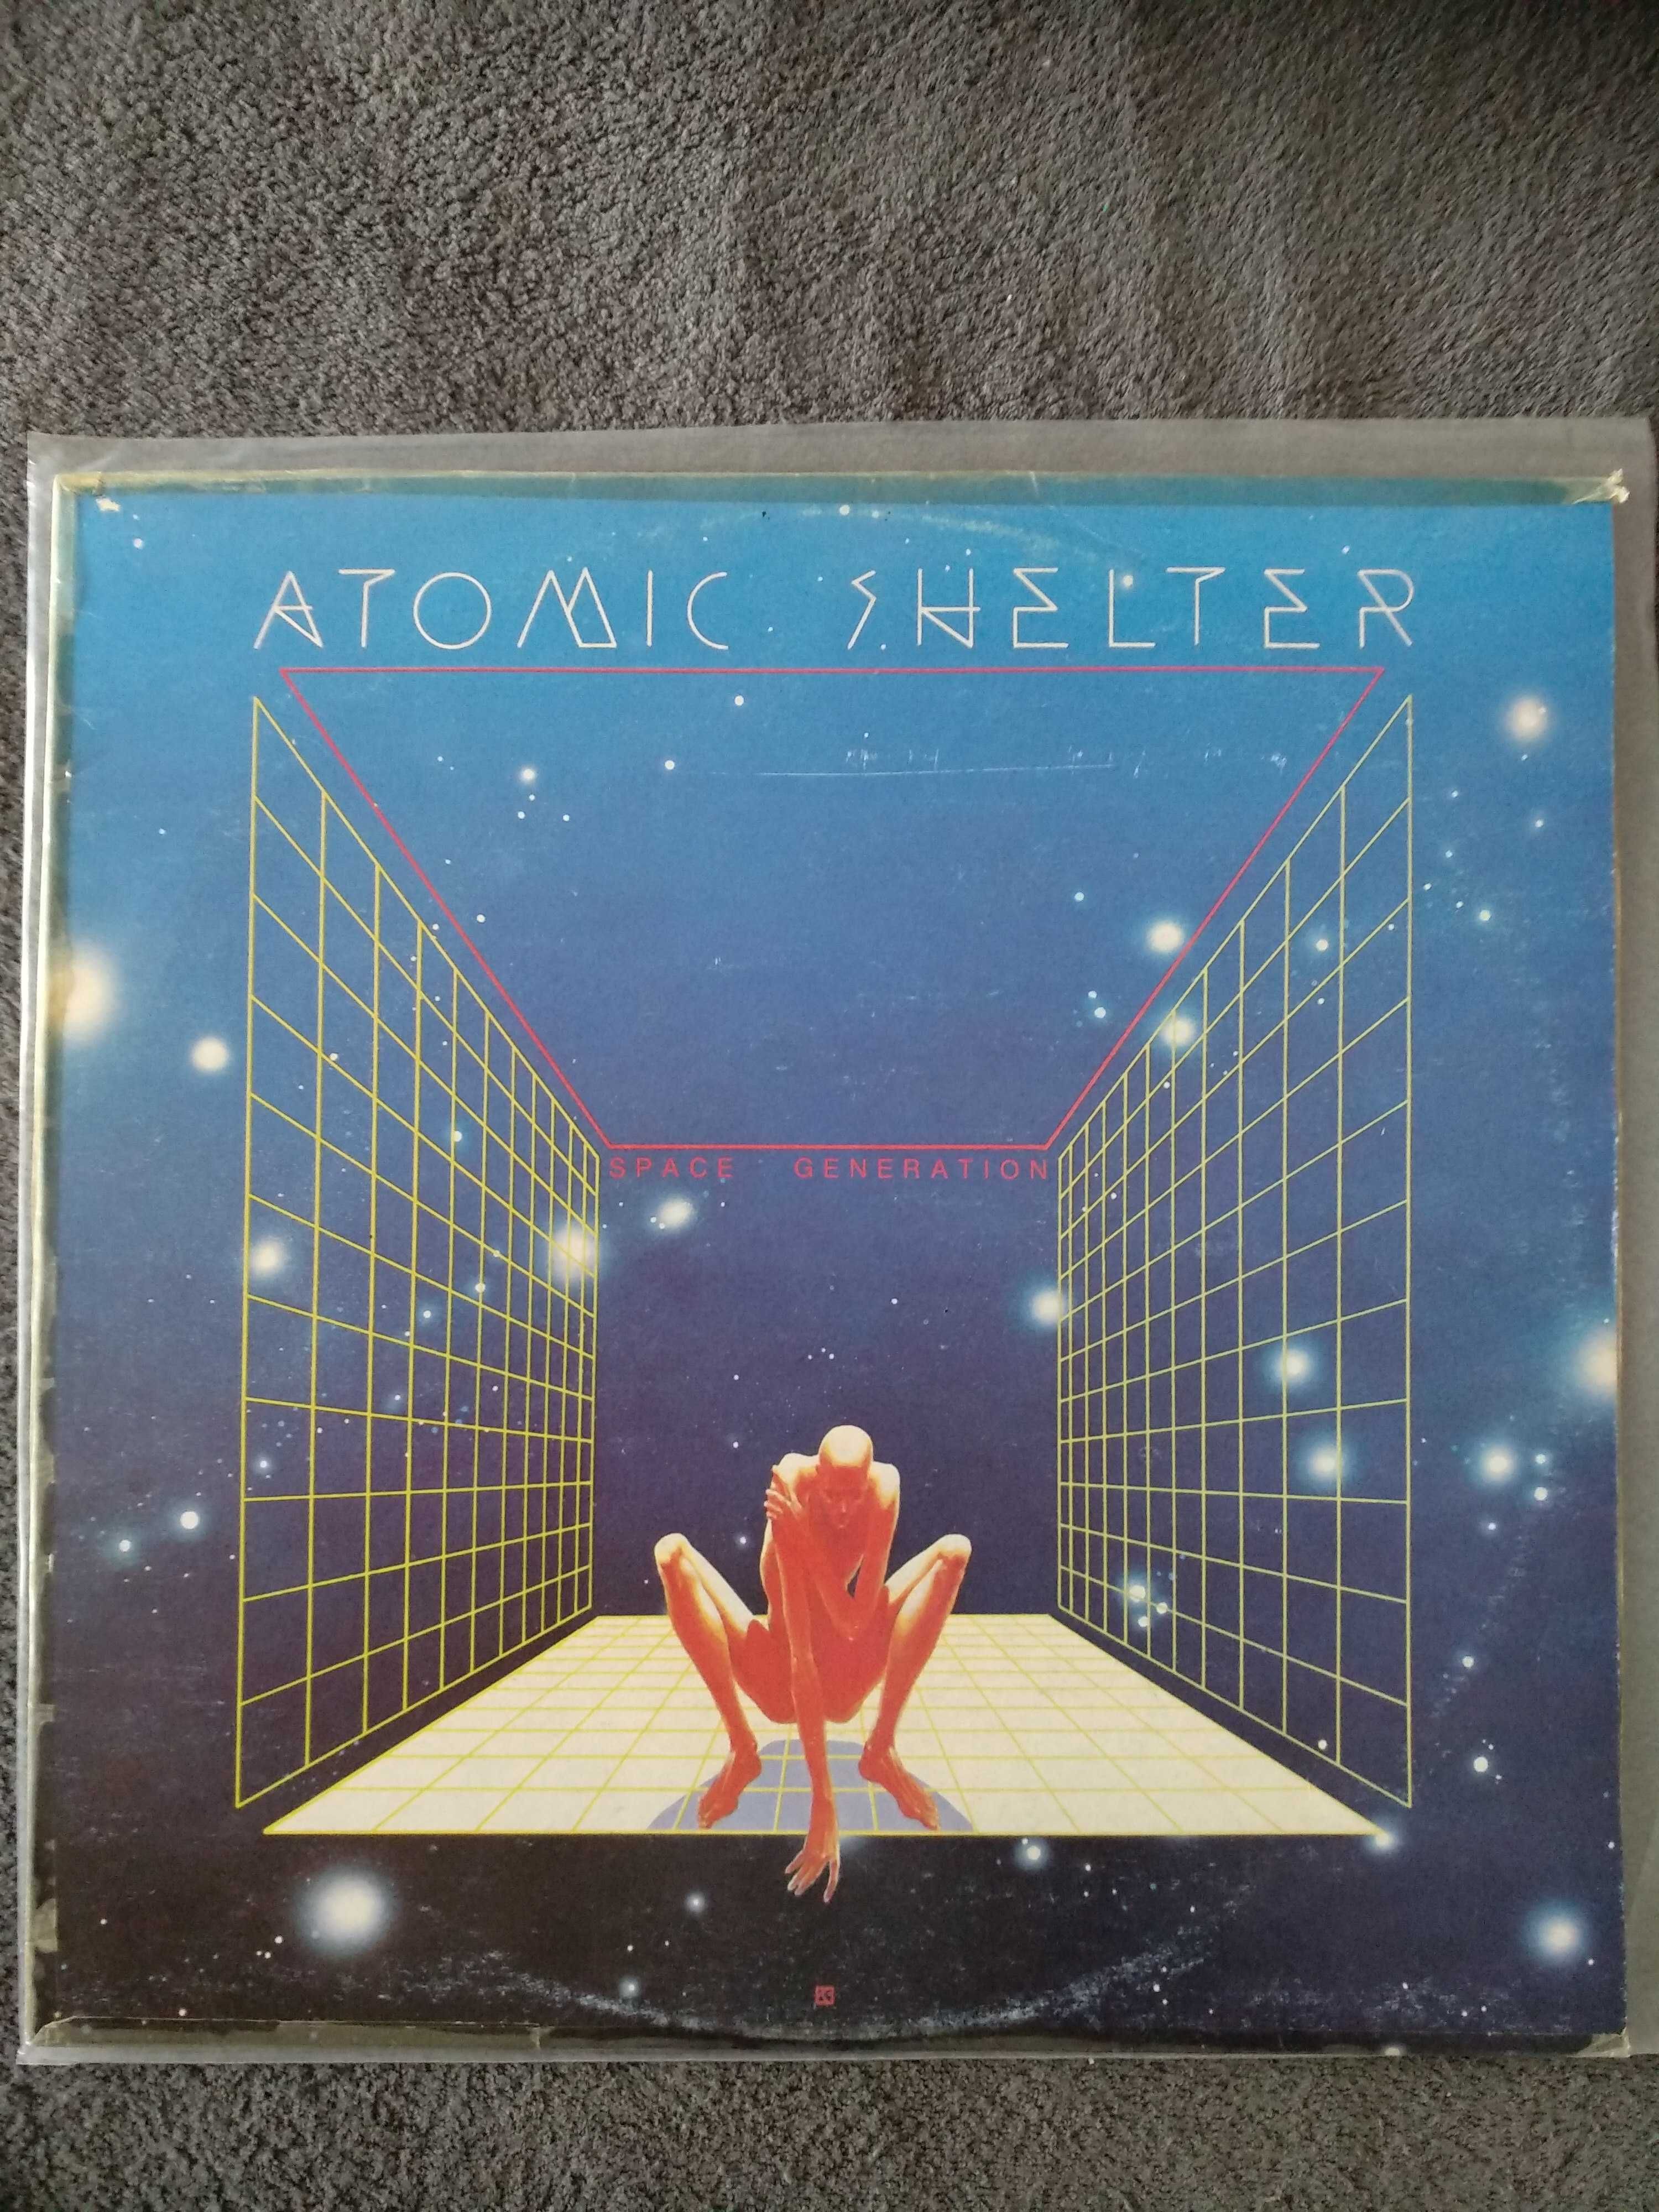 Atomic Shelter – Space Generation jugoslawia